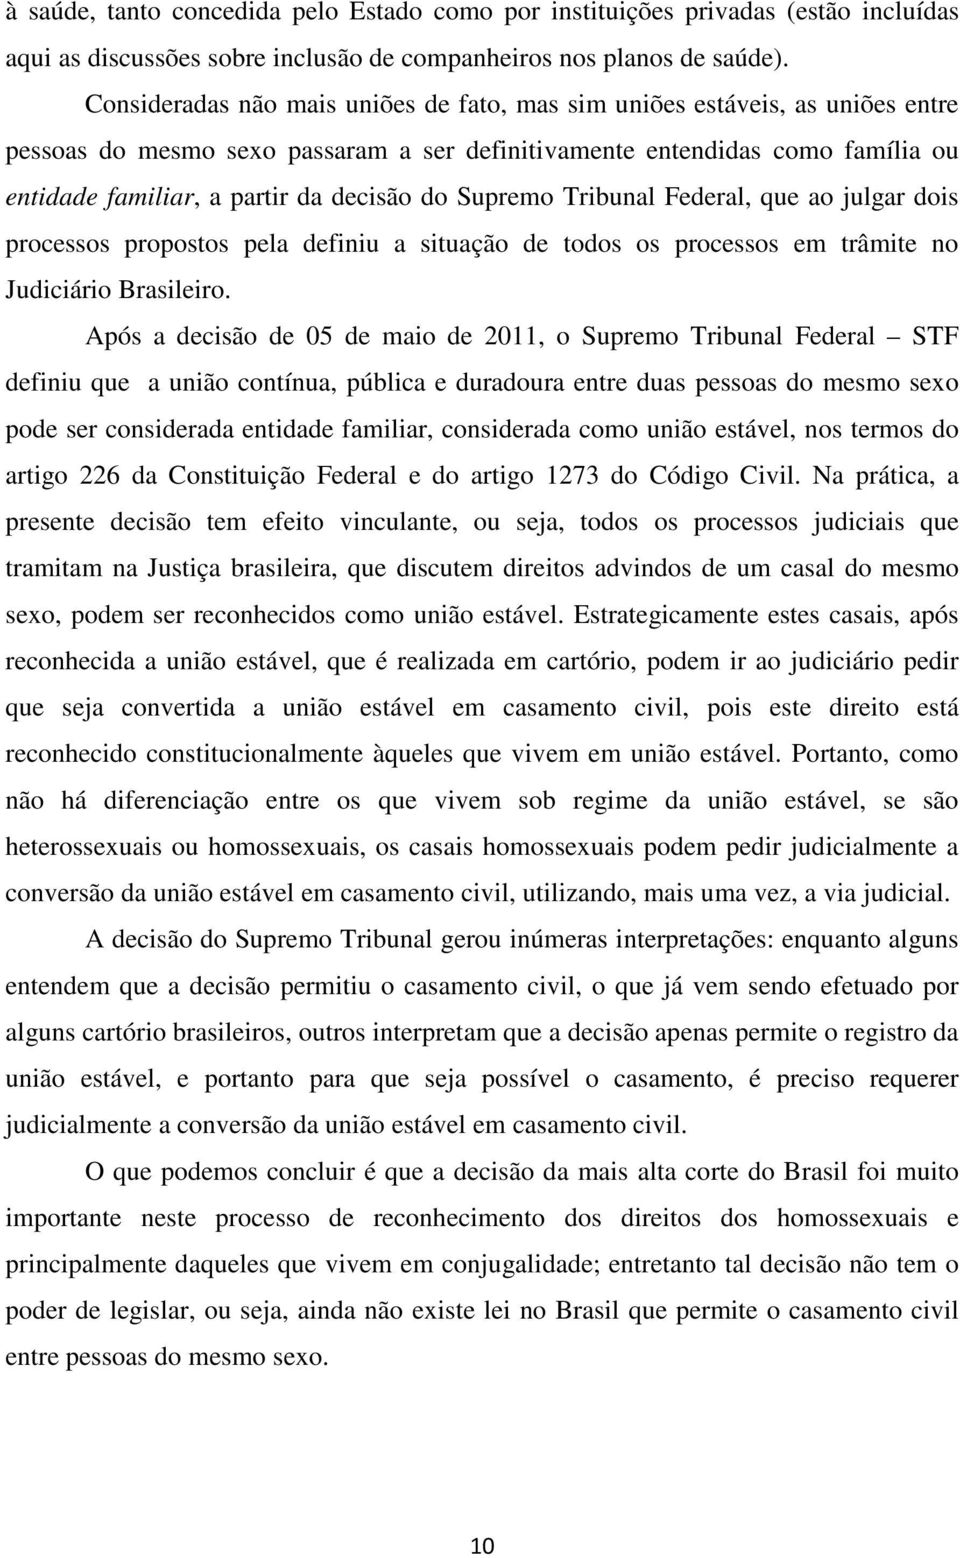 do Supremo Tribunal Federal, que ao julgar dois processos propostos pela definiu a situação de todos os processos em trâmite no Judiciário Brasileiro.